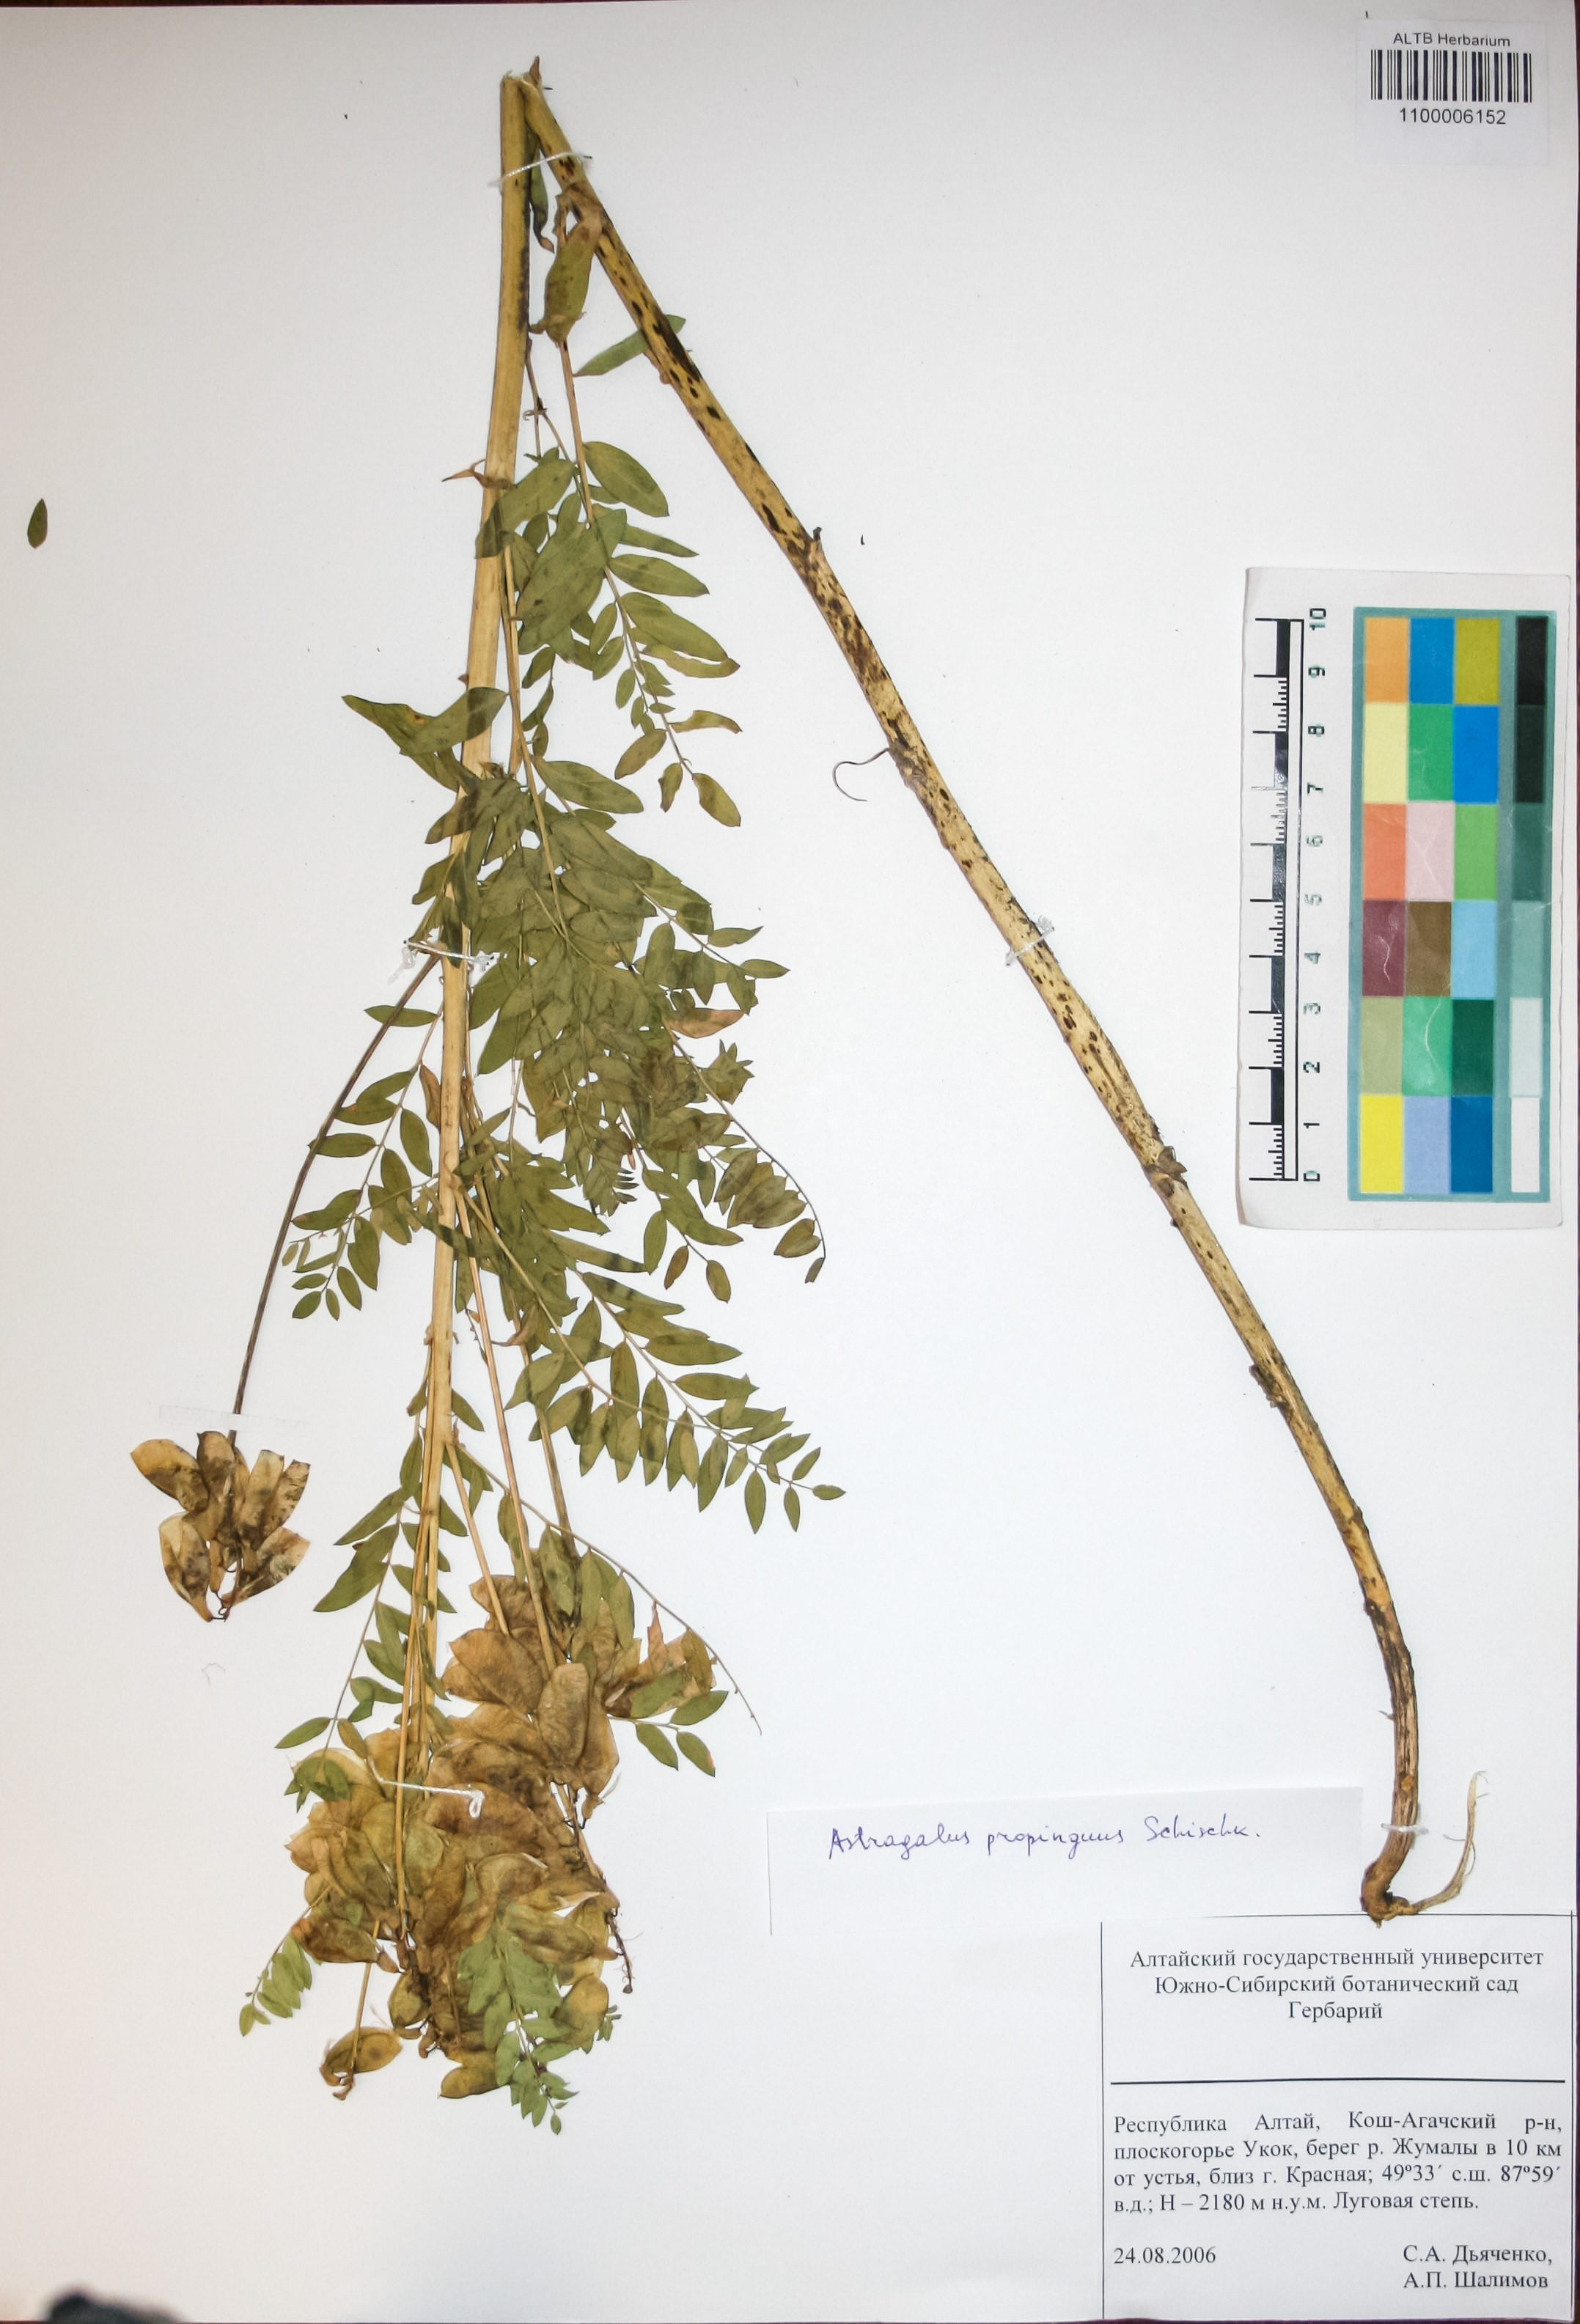 Fabaceae,Astragalus propinquus Schischk.